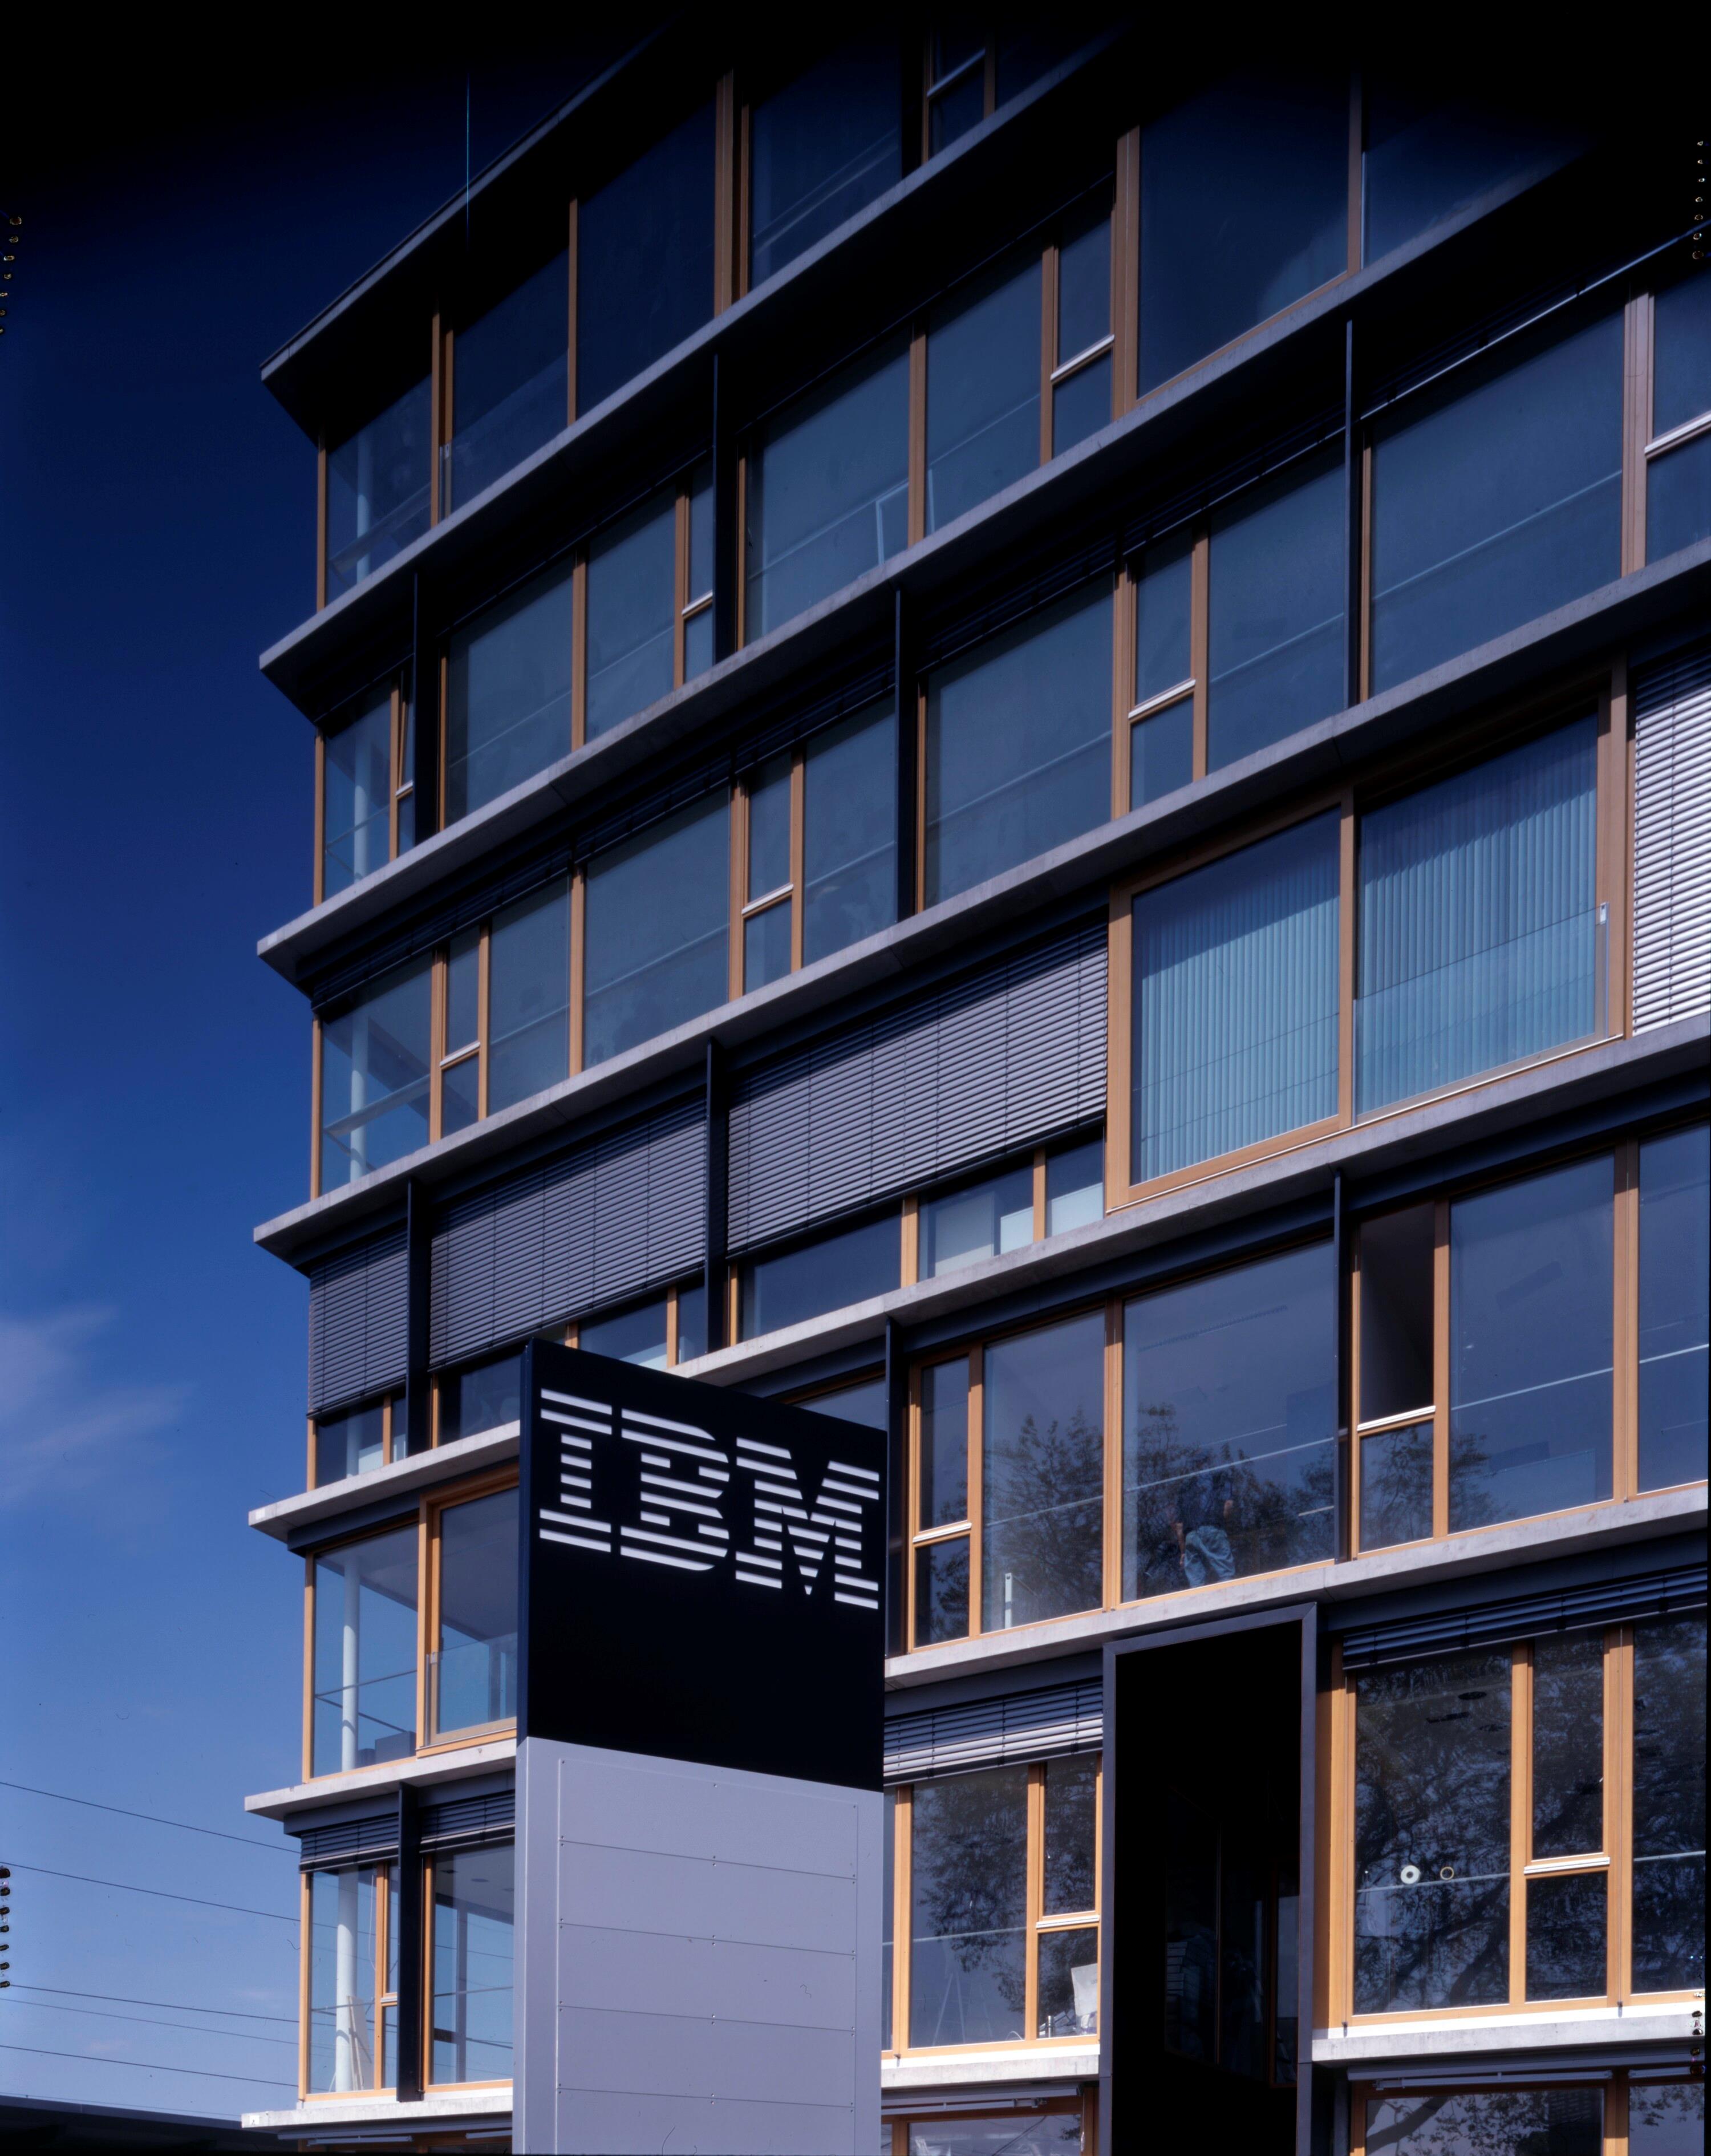 Büro IBM Bregenz></div>


    <hr>
    <div class=